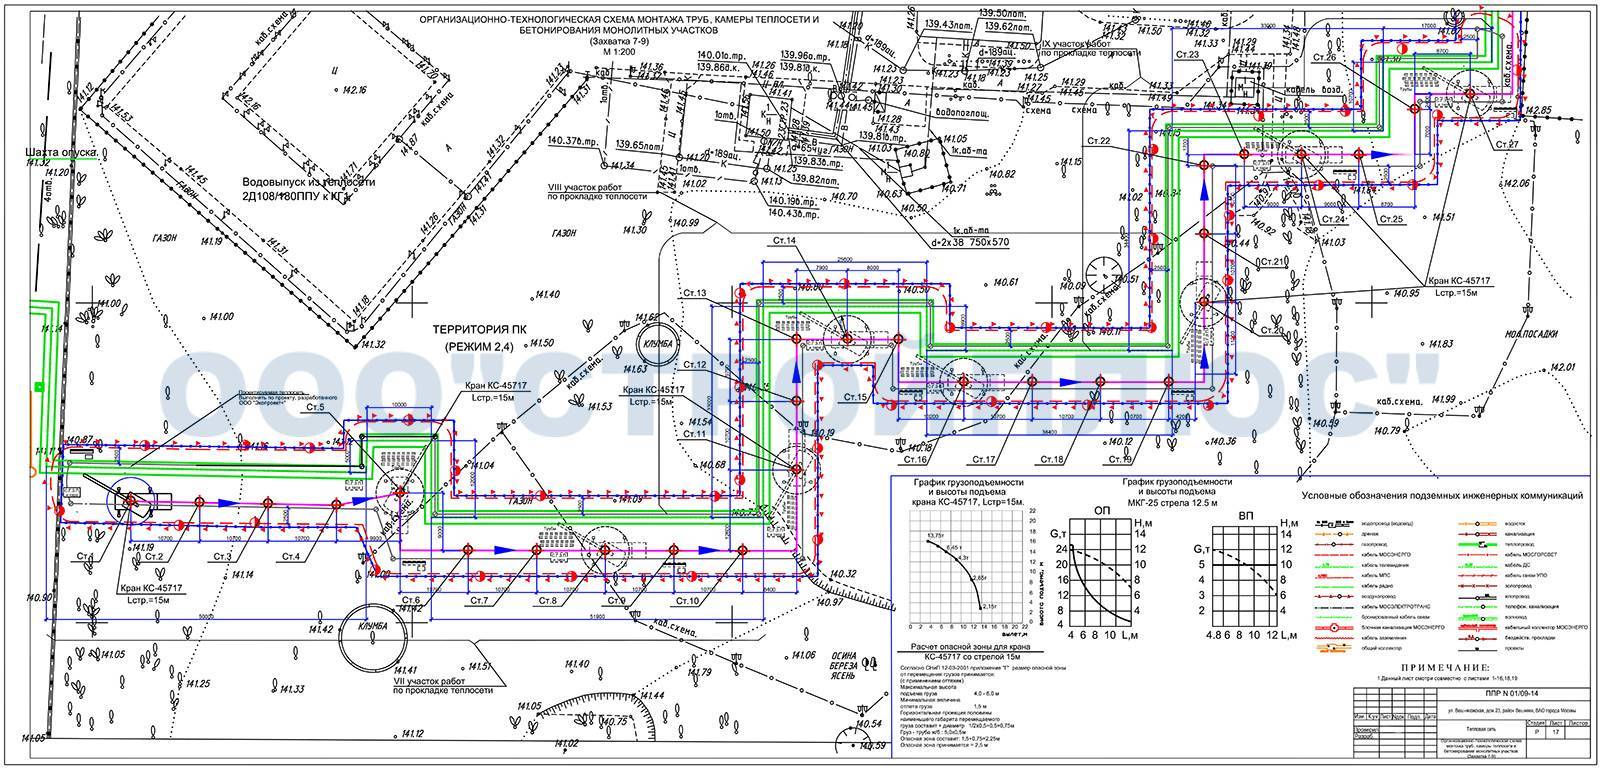 Монтаж наружных сетей водопровода и канализации: общие правила, нормативные документы, этапы